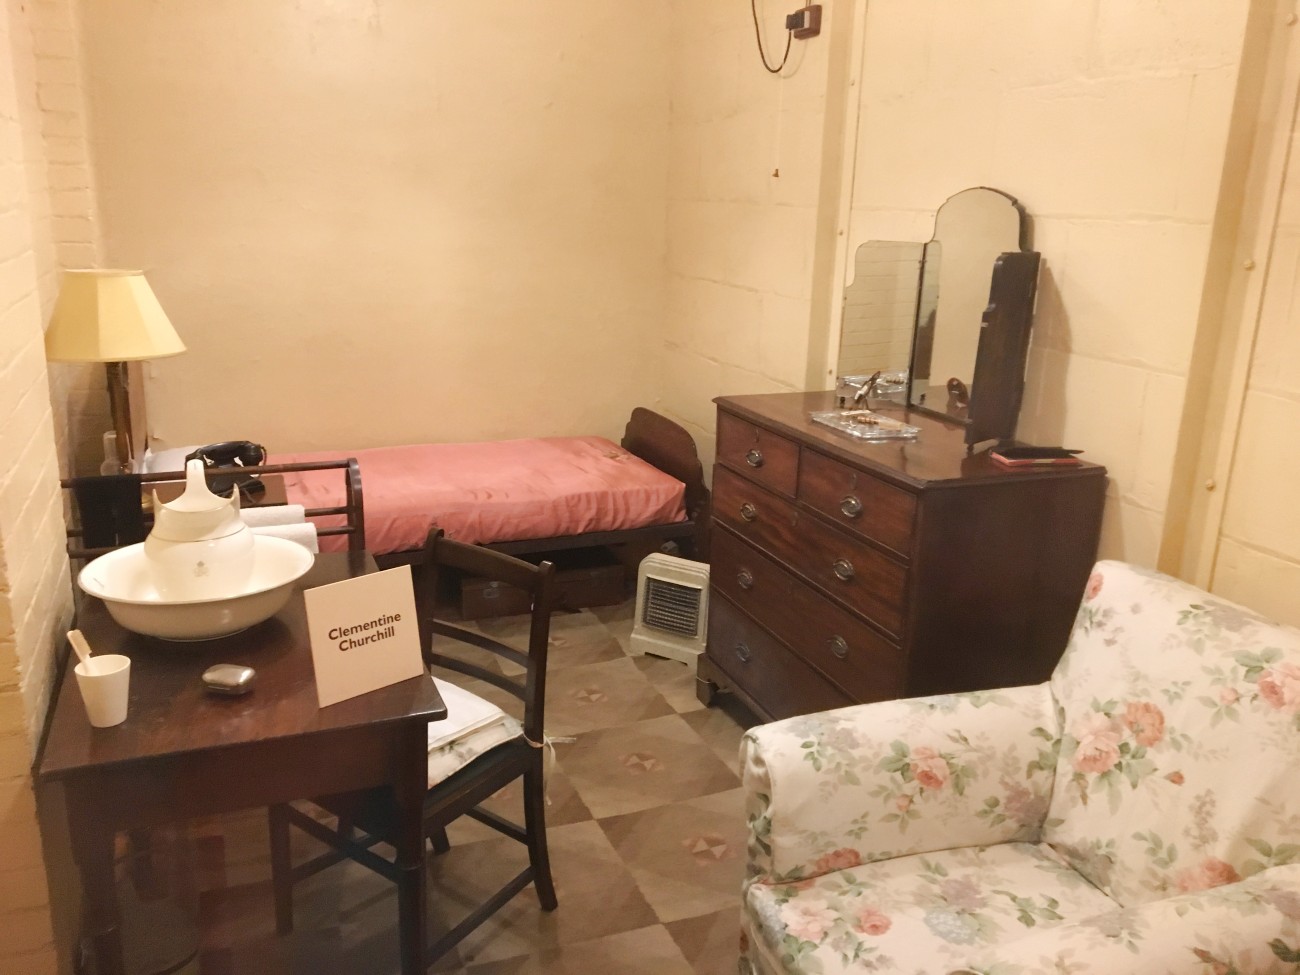 Mrs Churchill's bunker bedroom